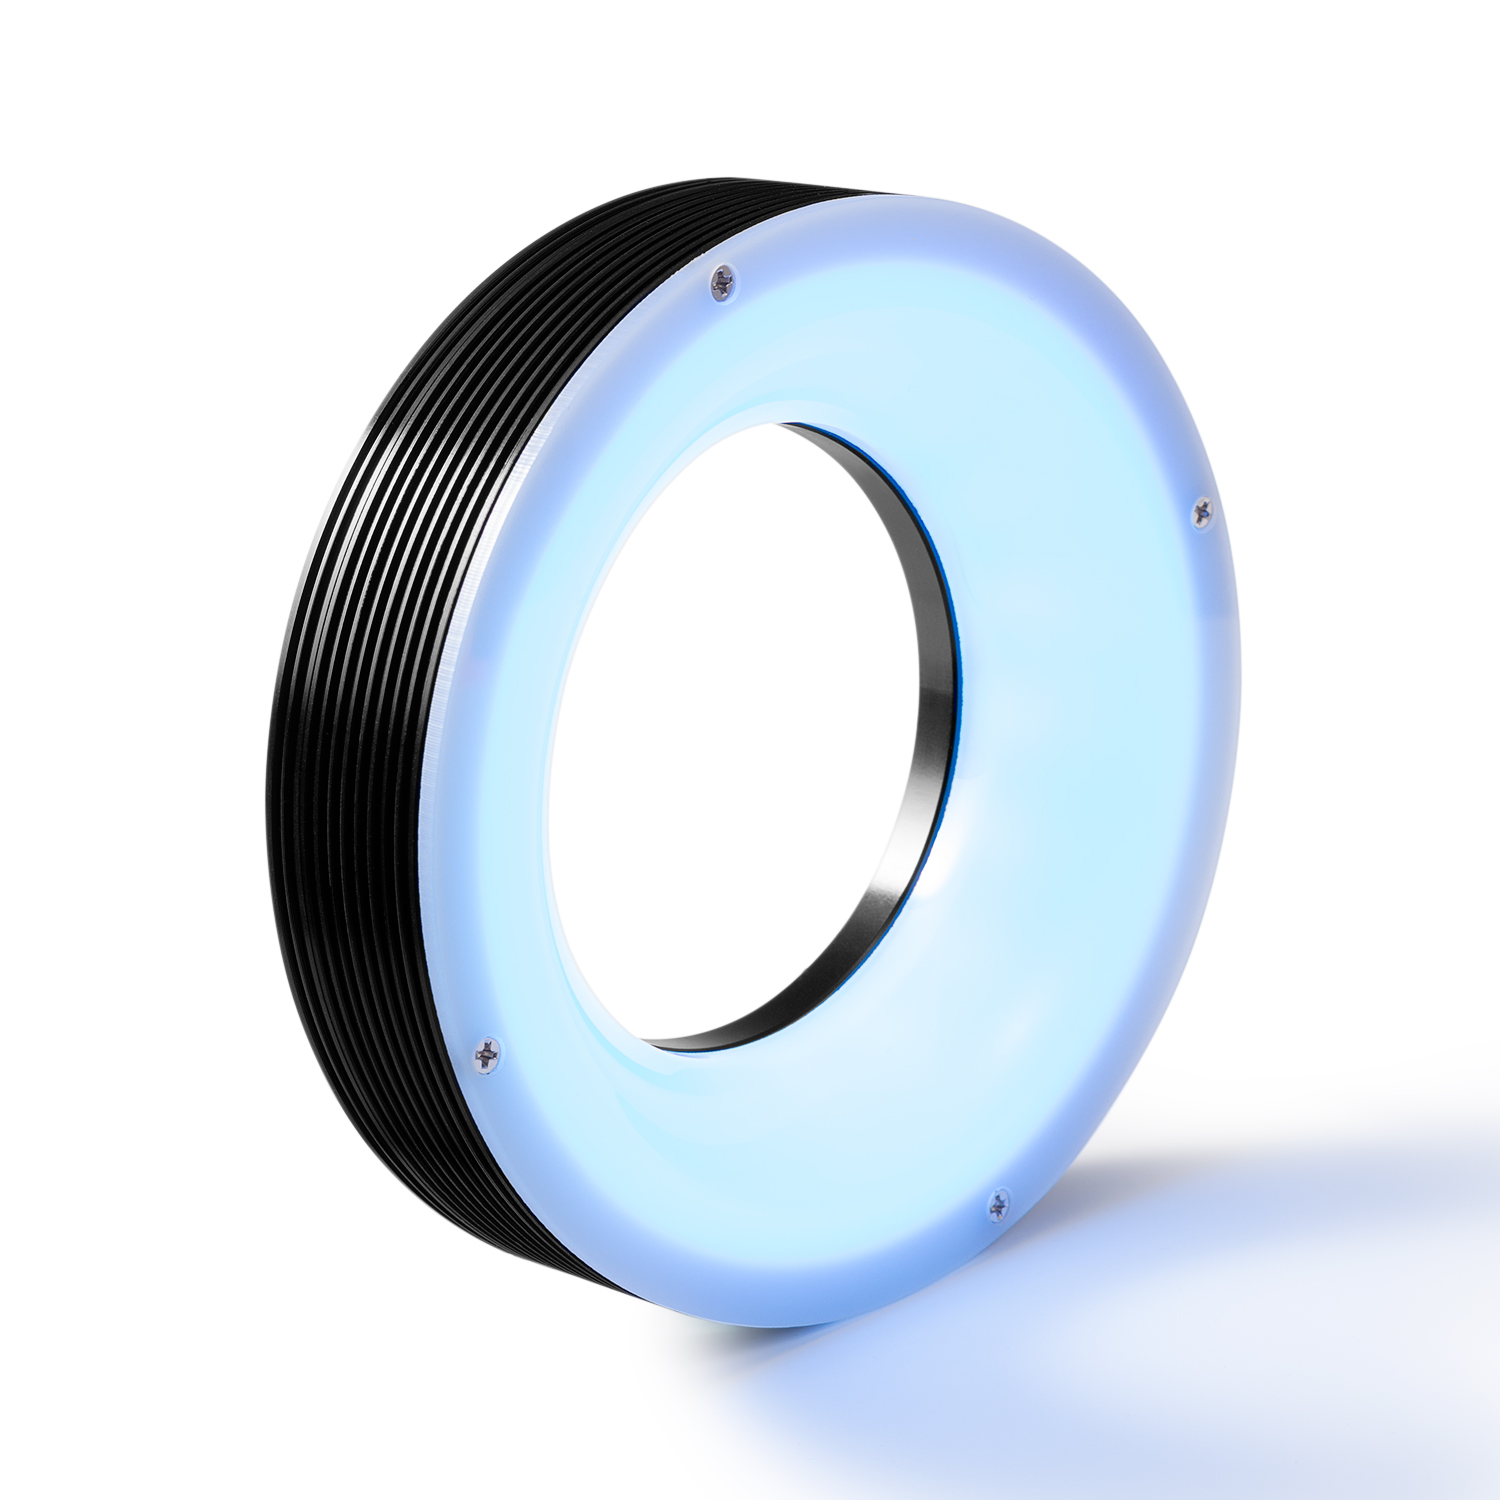 ระบบไฟส่องสว่าง แหวน ไร้เงา (ขาว/แดง/น้ำเงิน) สำหรับ อุปกรณ์สำหรับงานตรวจสอบชิ้นงาน ชิ้นส่วนอิเล็กทรอนิกส์ ฯลฯ (CST-HRS116-R)